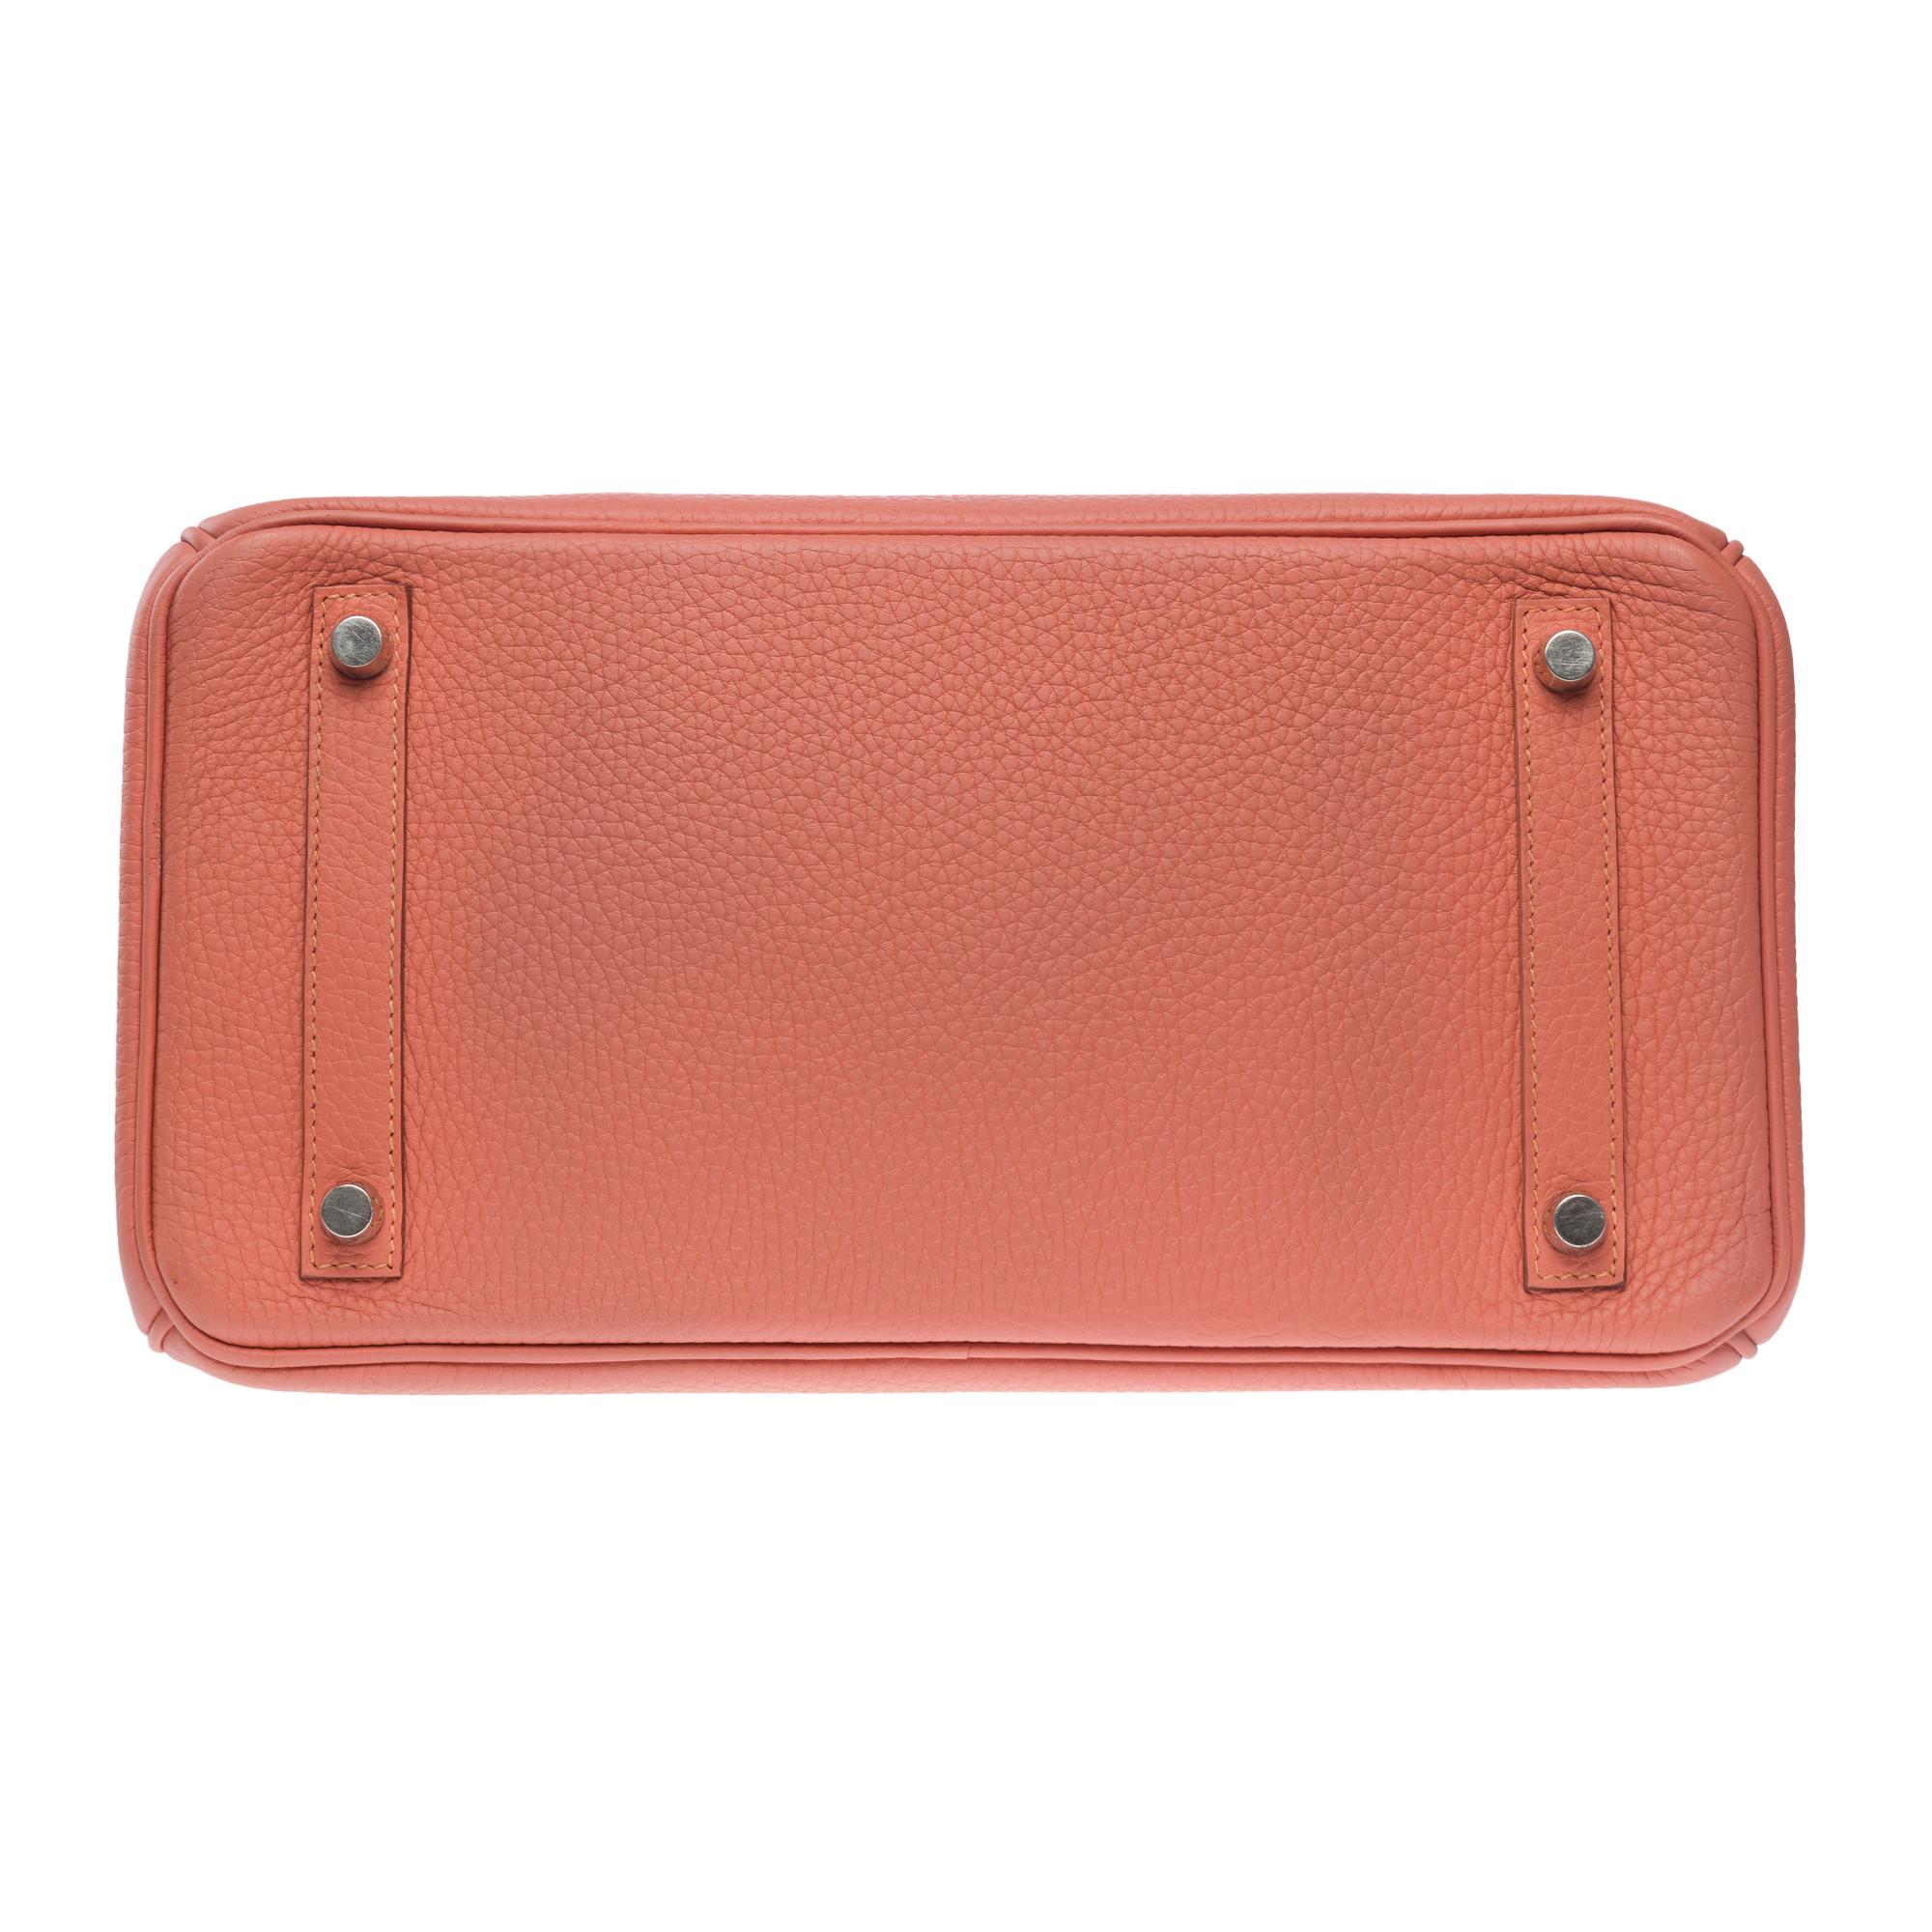 Stunning Hermes Birkin 30 handbag in Rose Tea Togo leather, SHW For Sale 5